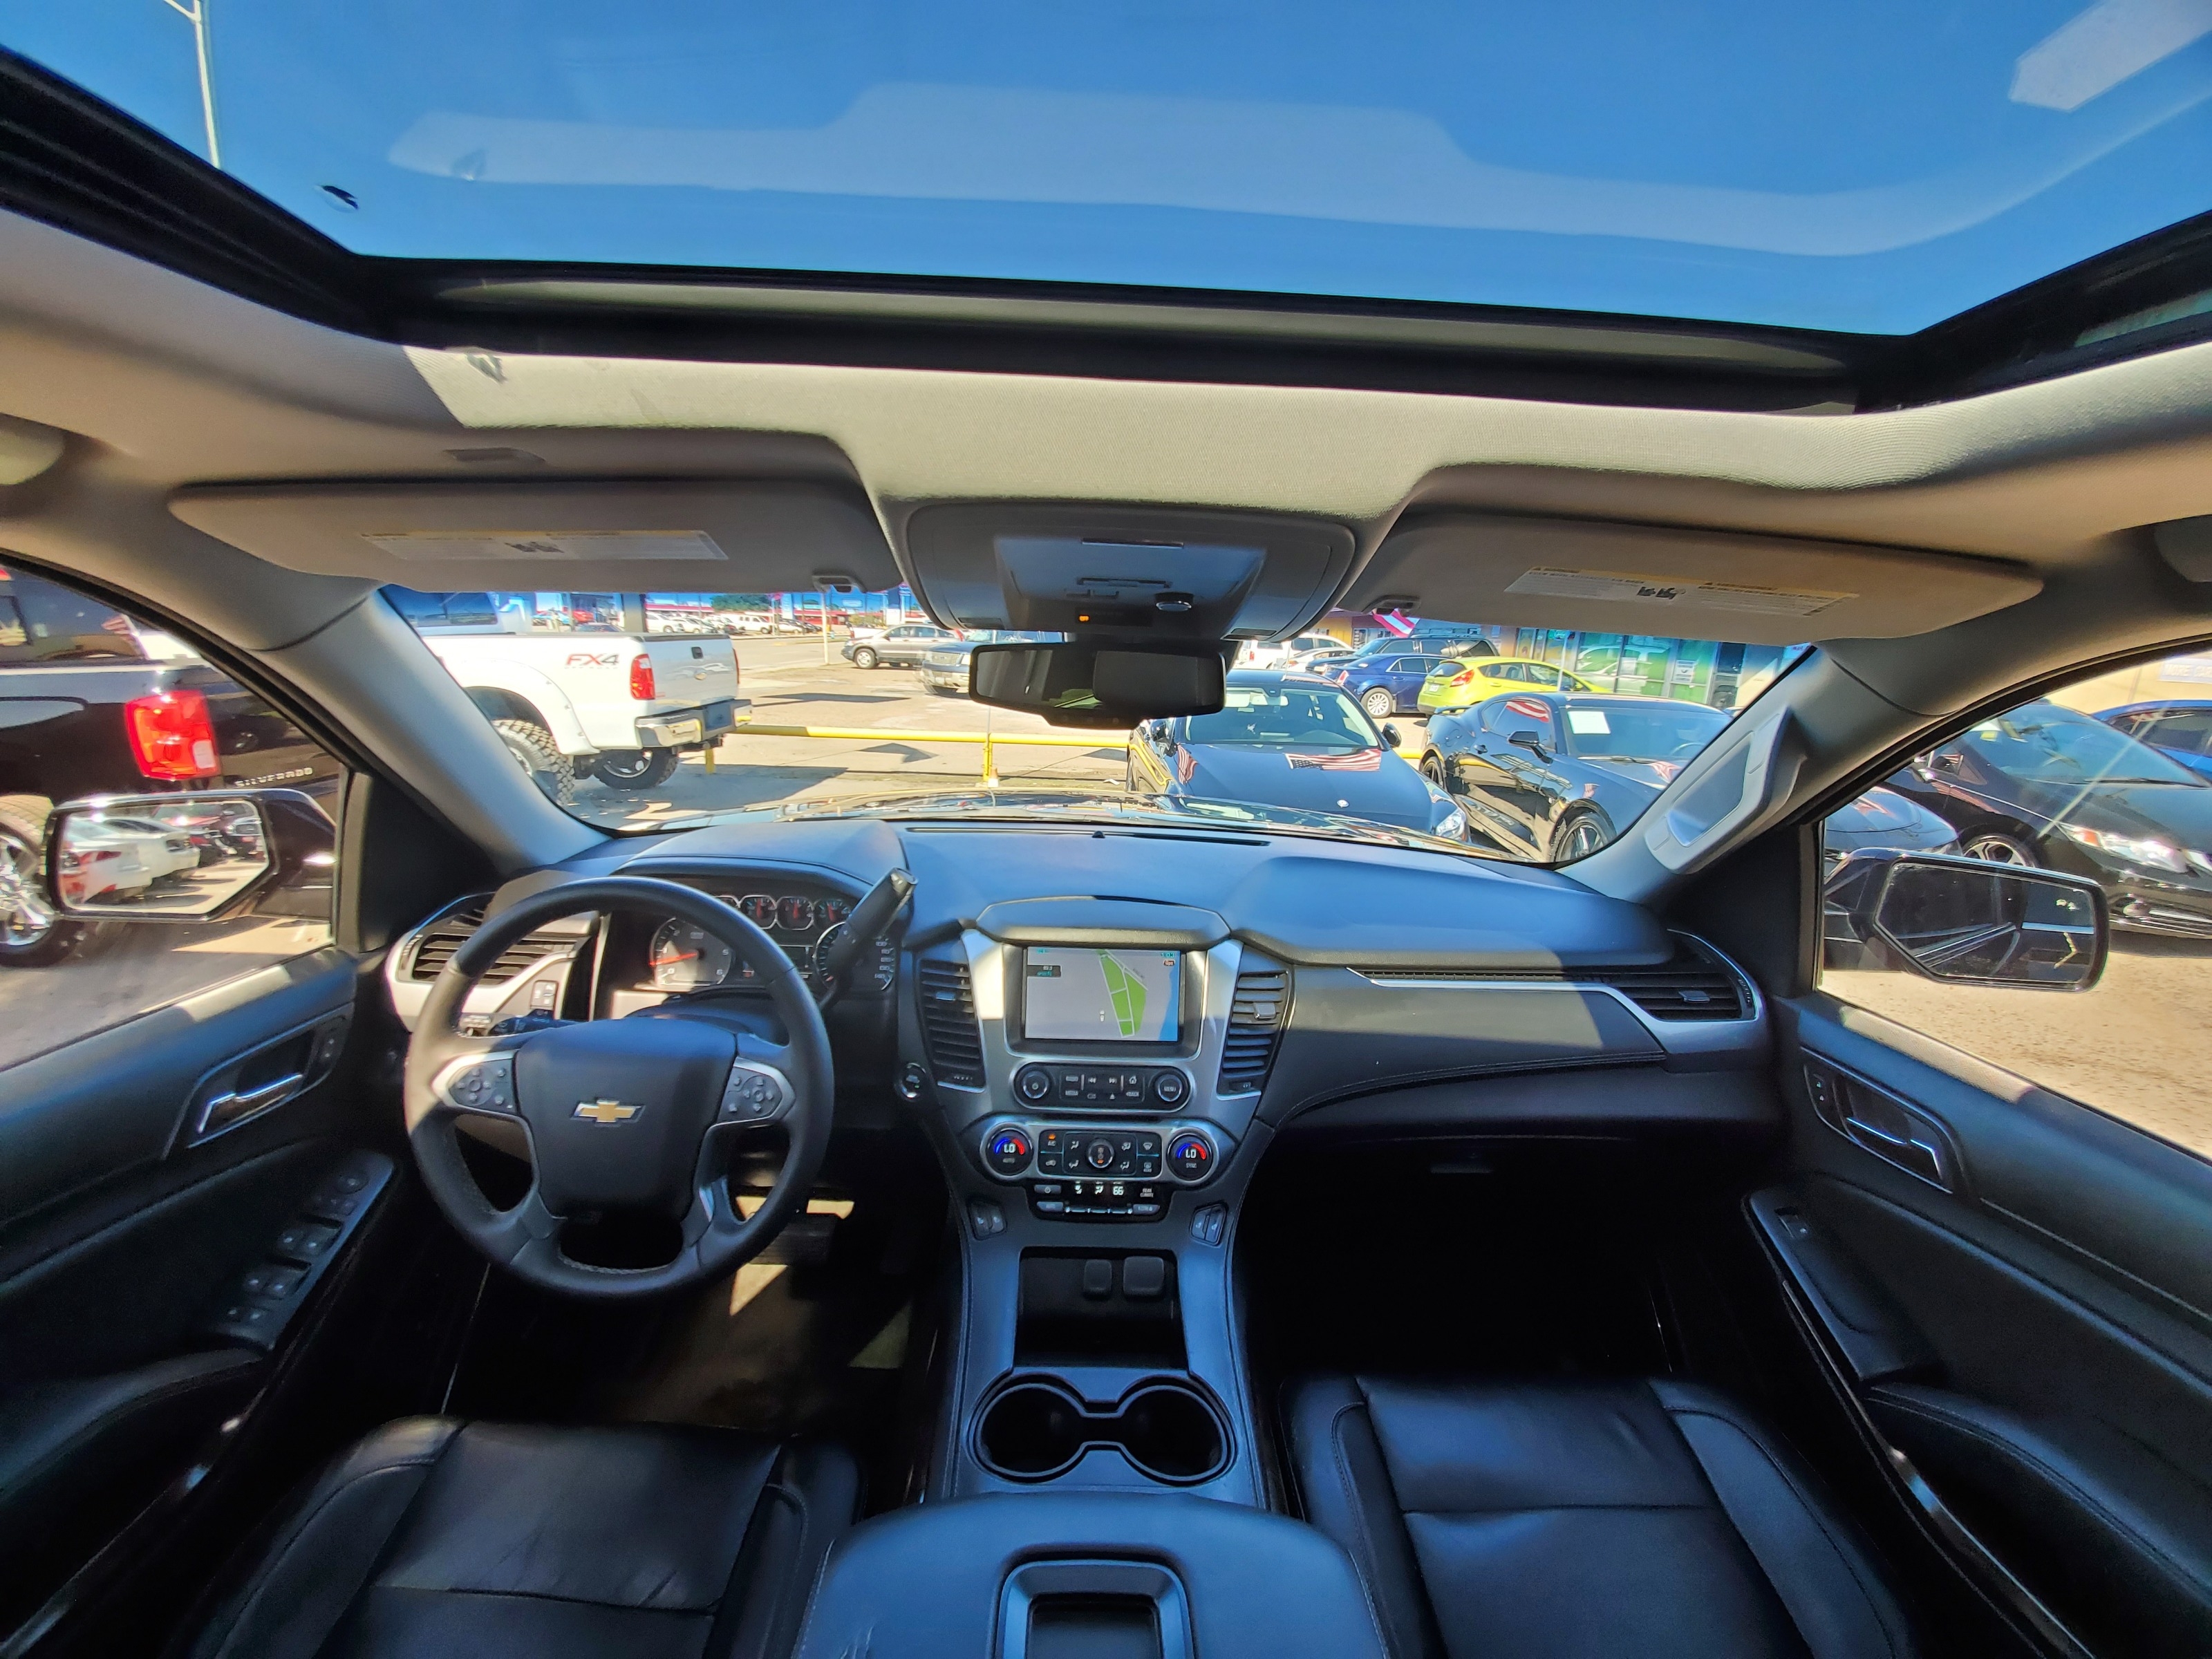 2015 Chevrolet Tahoe 2wd 4dr Lt Paisanos Auto Sales Auto